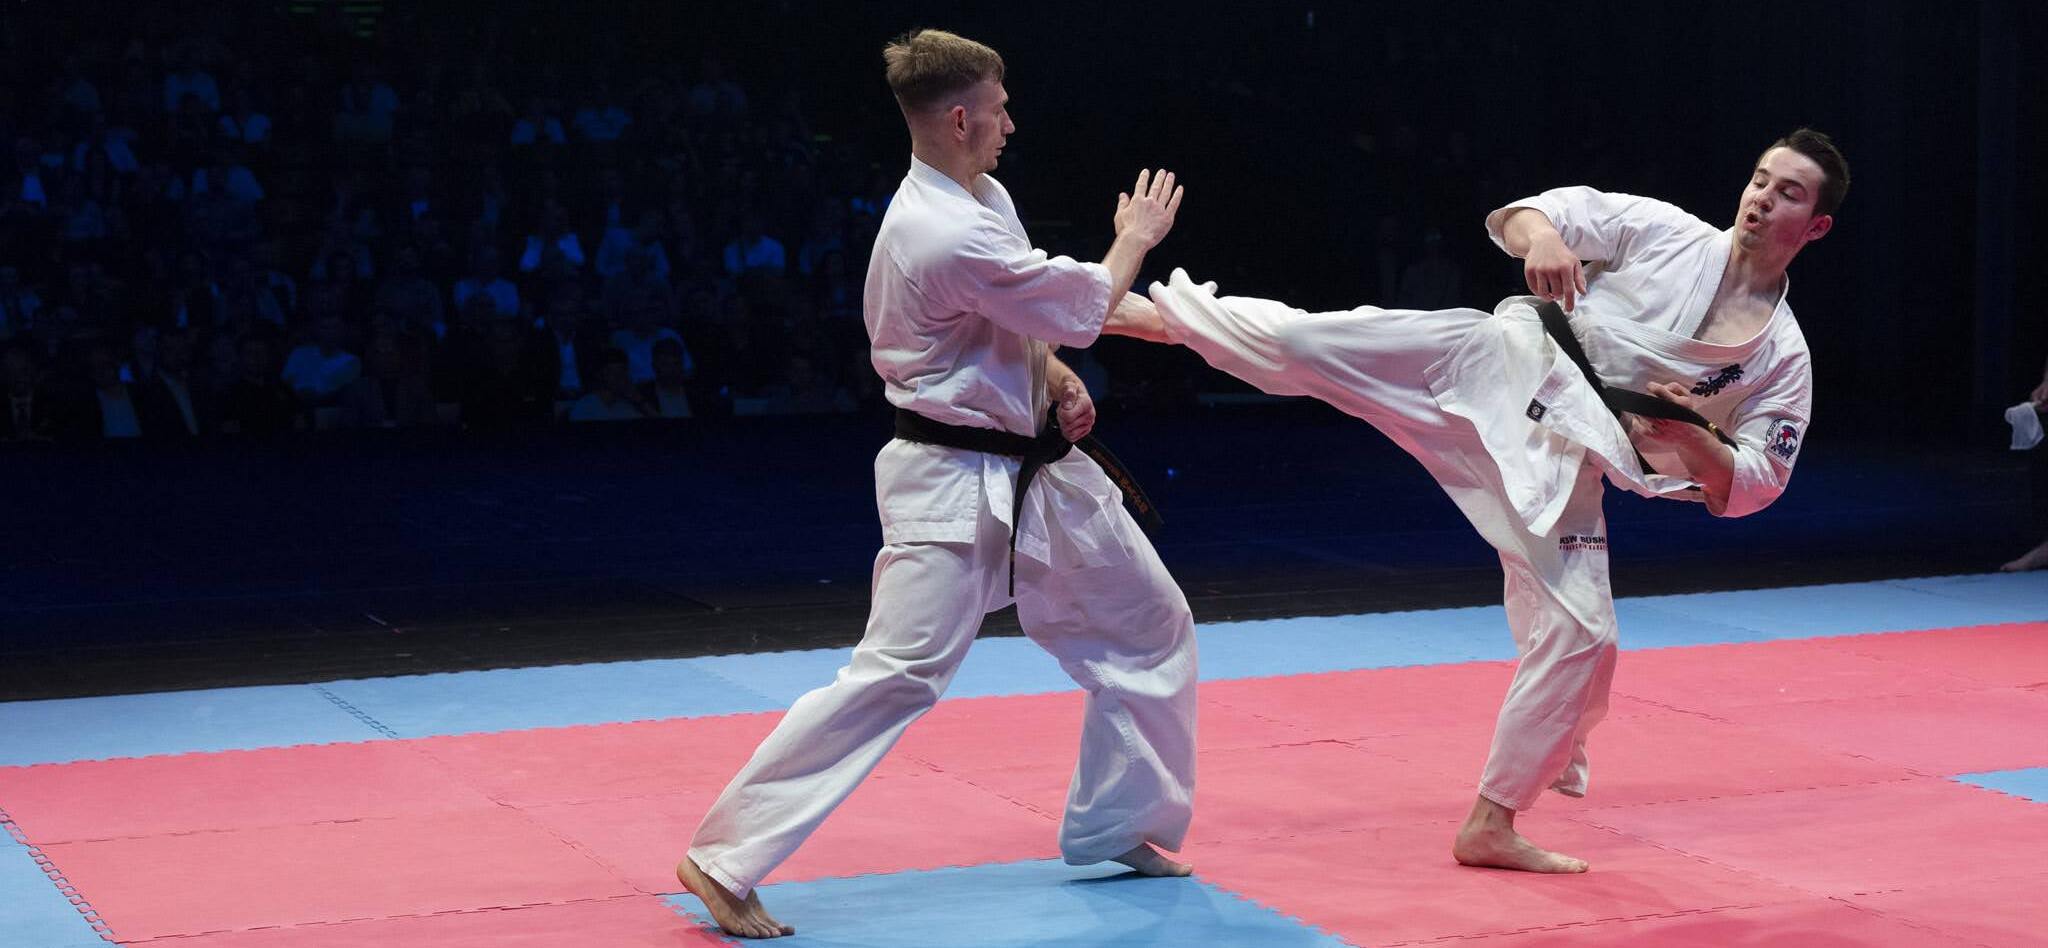 Karatecy podczas walki na macie